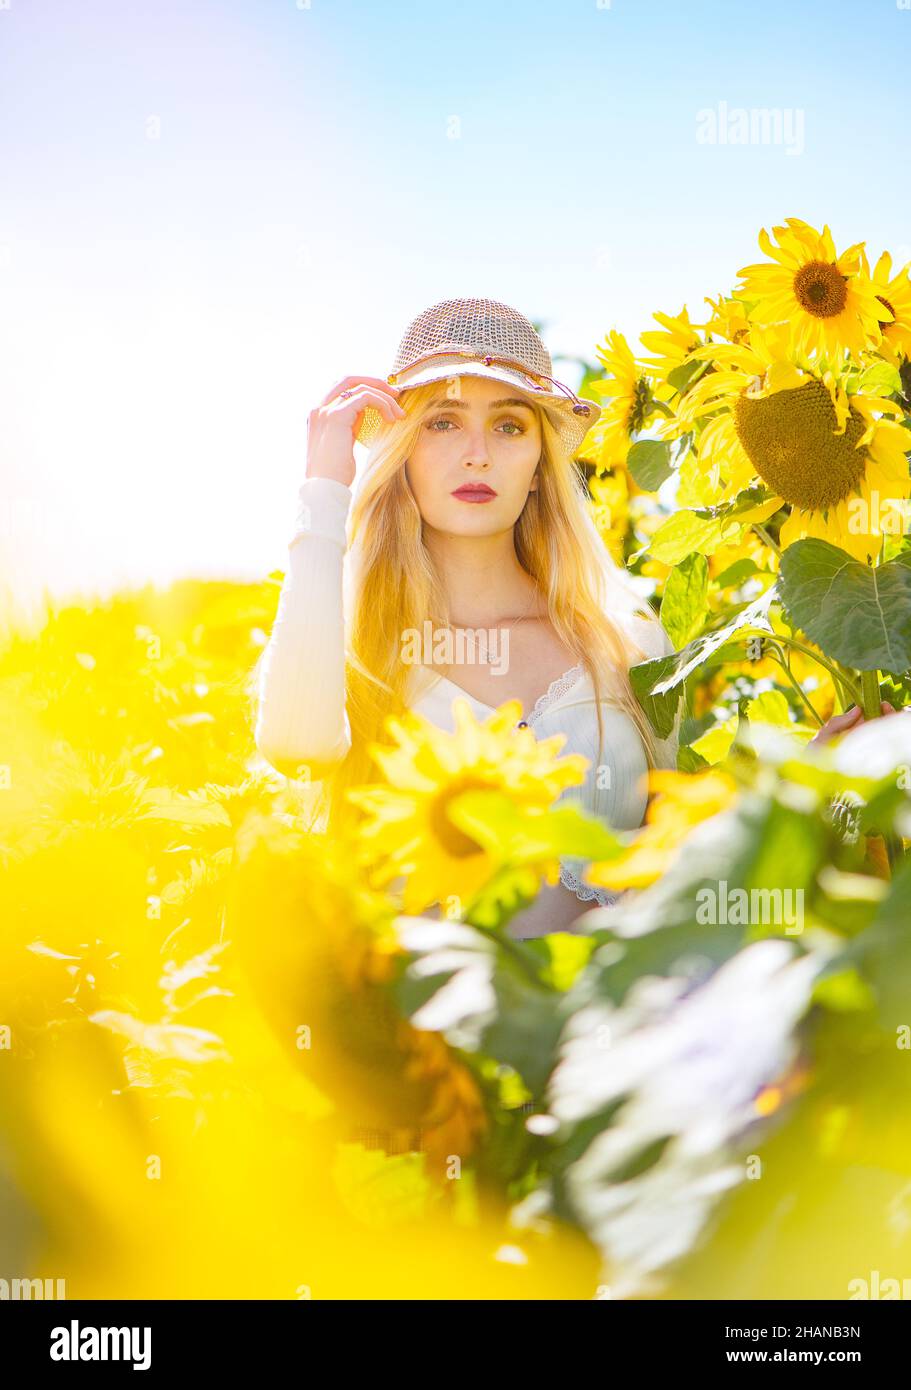 Une blonde assez longue cheveux jeunes femmes (22 ans) dans un champ de tournesol lors d'une journée ensoleillée et lumineuse portant un chapeau de paille raphia éditorial style de vie image. Banque D'Images